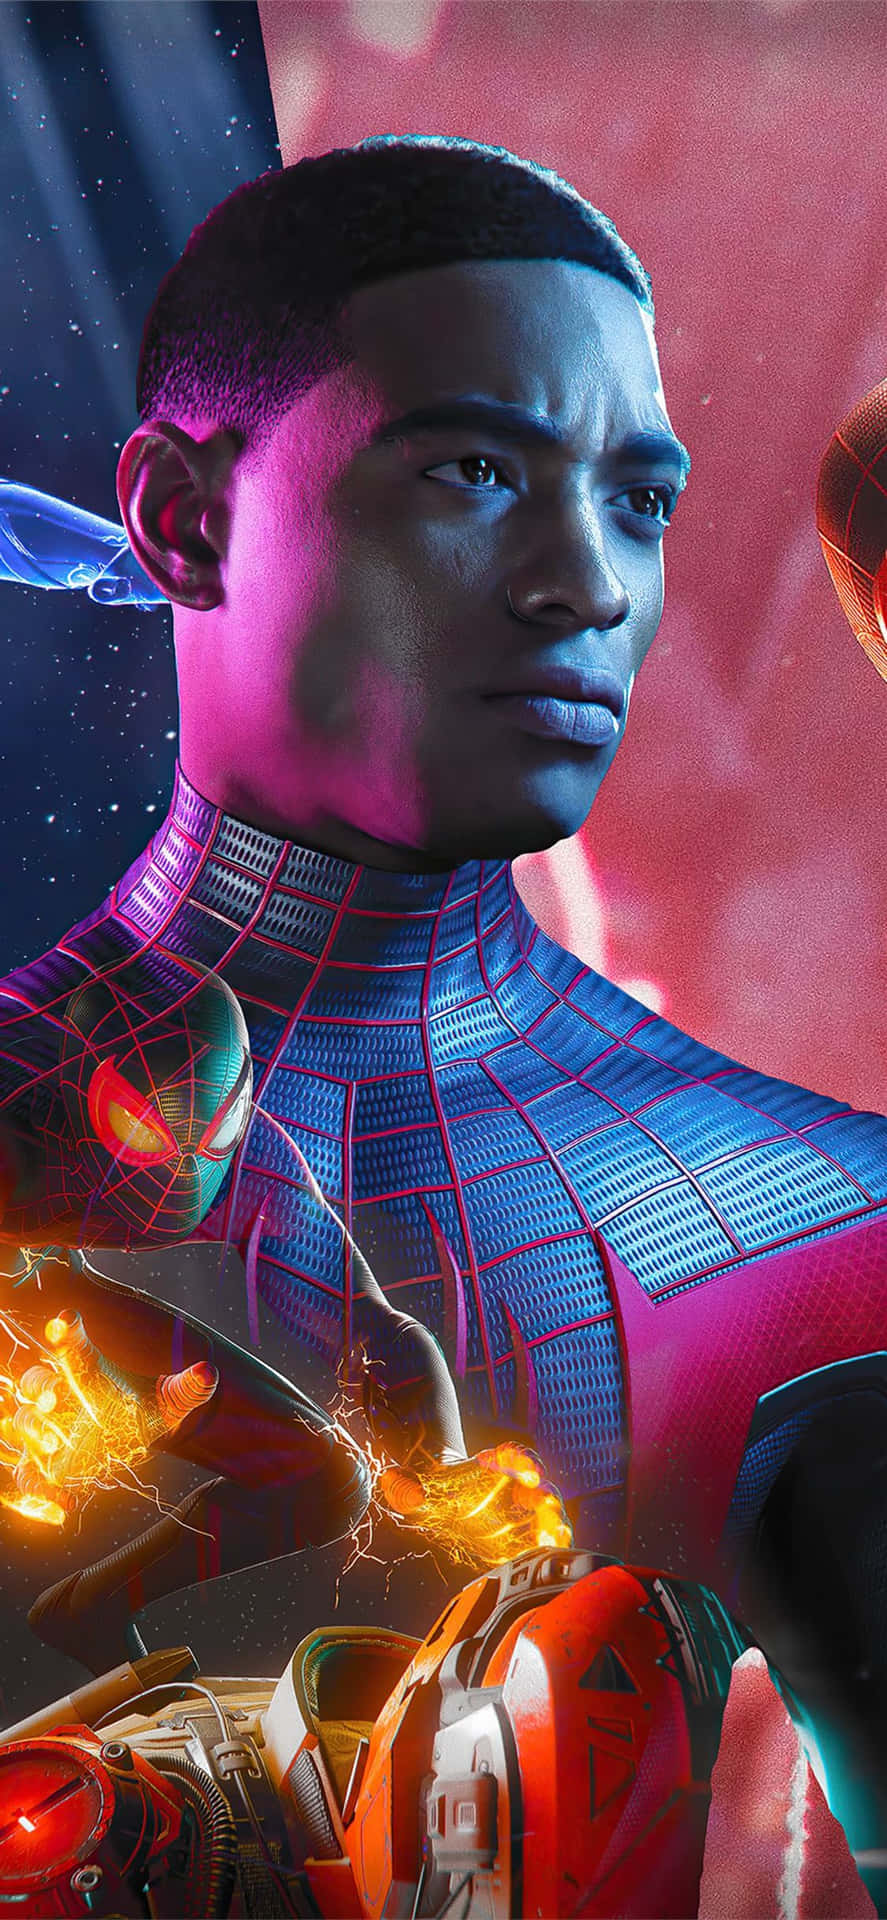 Miles Morales fra den højt roste Marvel's Spider-Man: Into the Spider-Verse omkranset af gnister af elektricitet mod en by smukke omgivelser Wallpaper